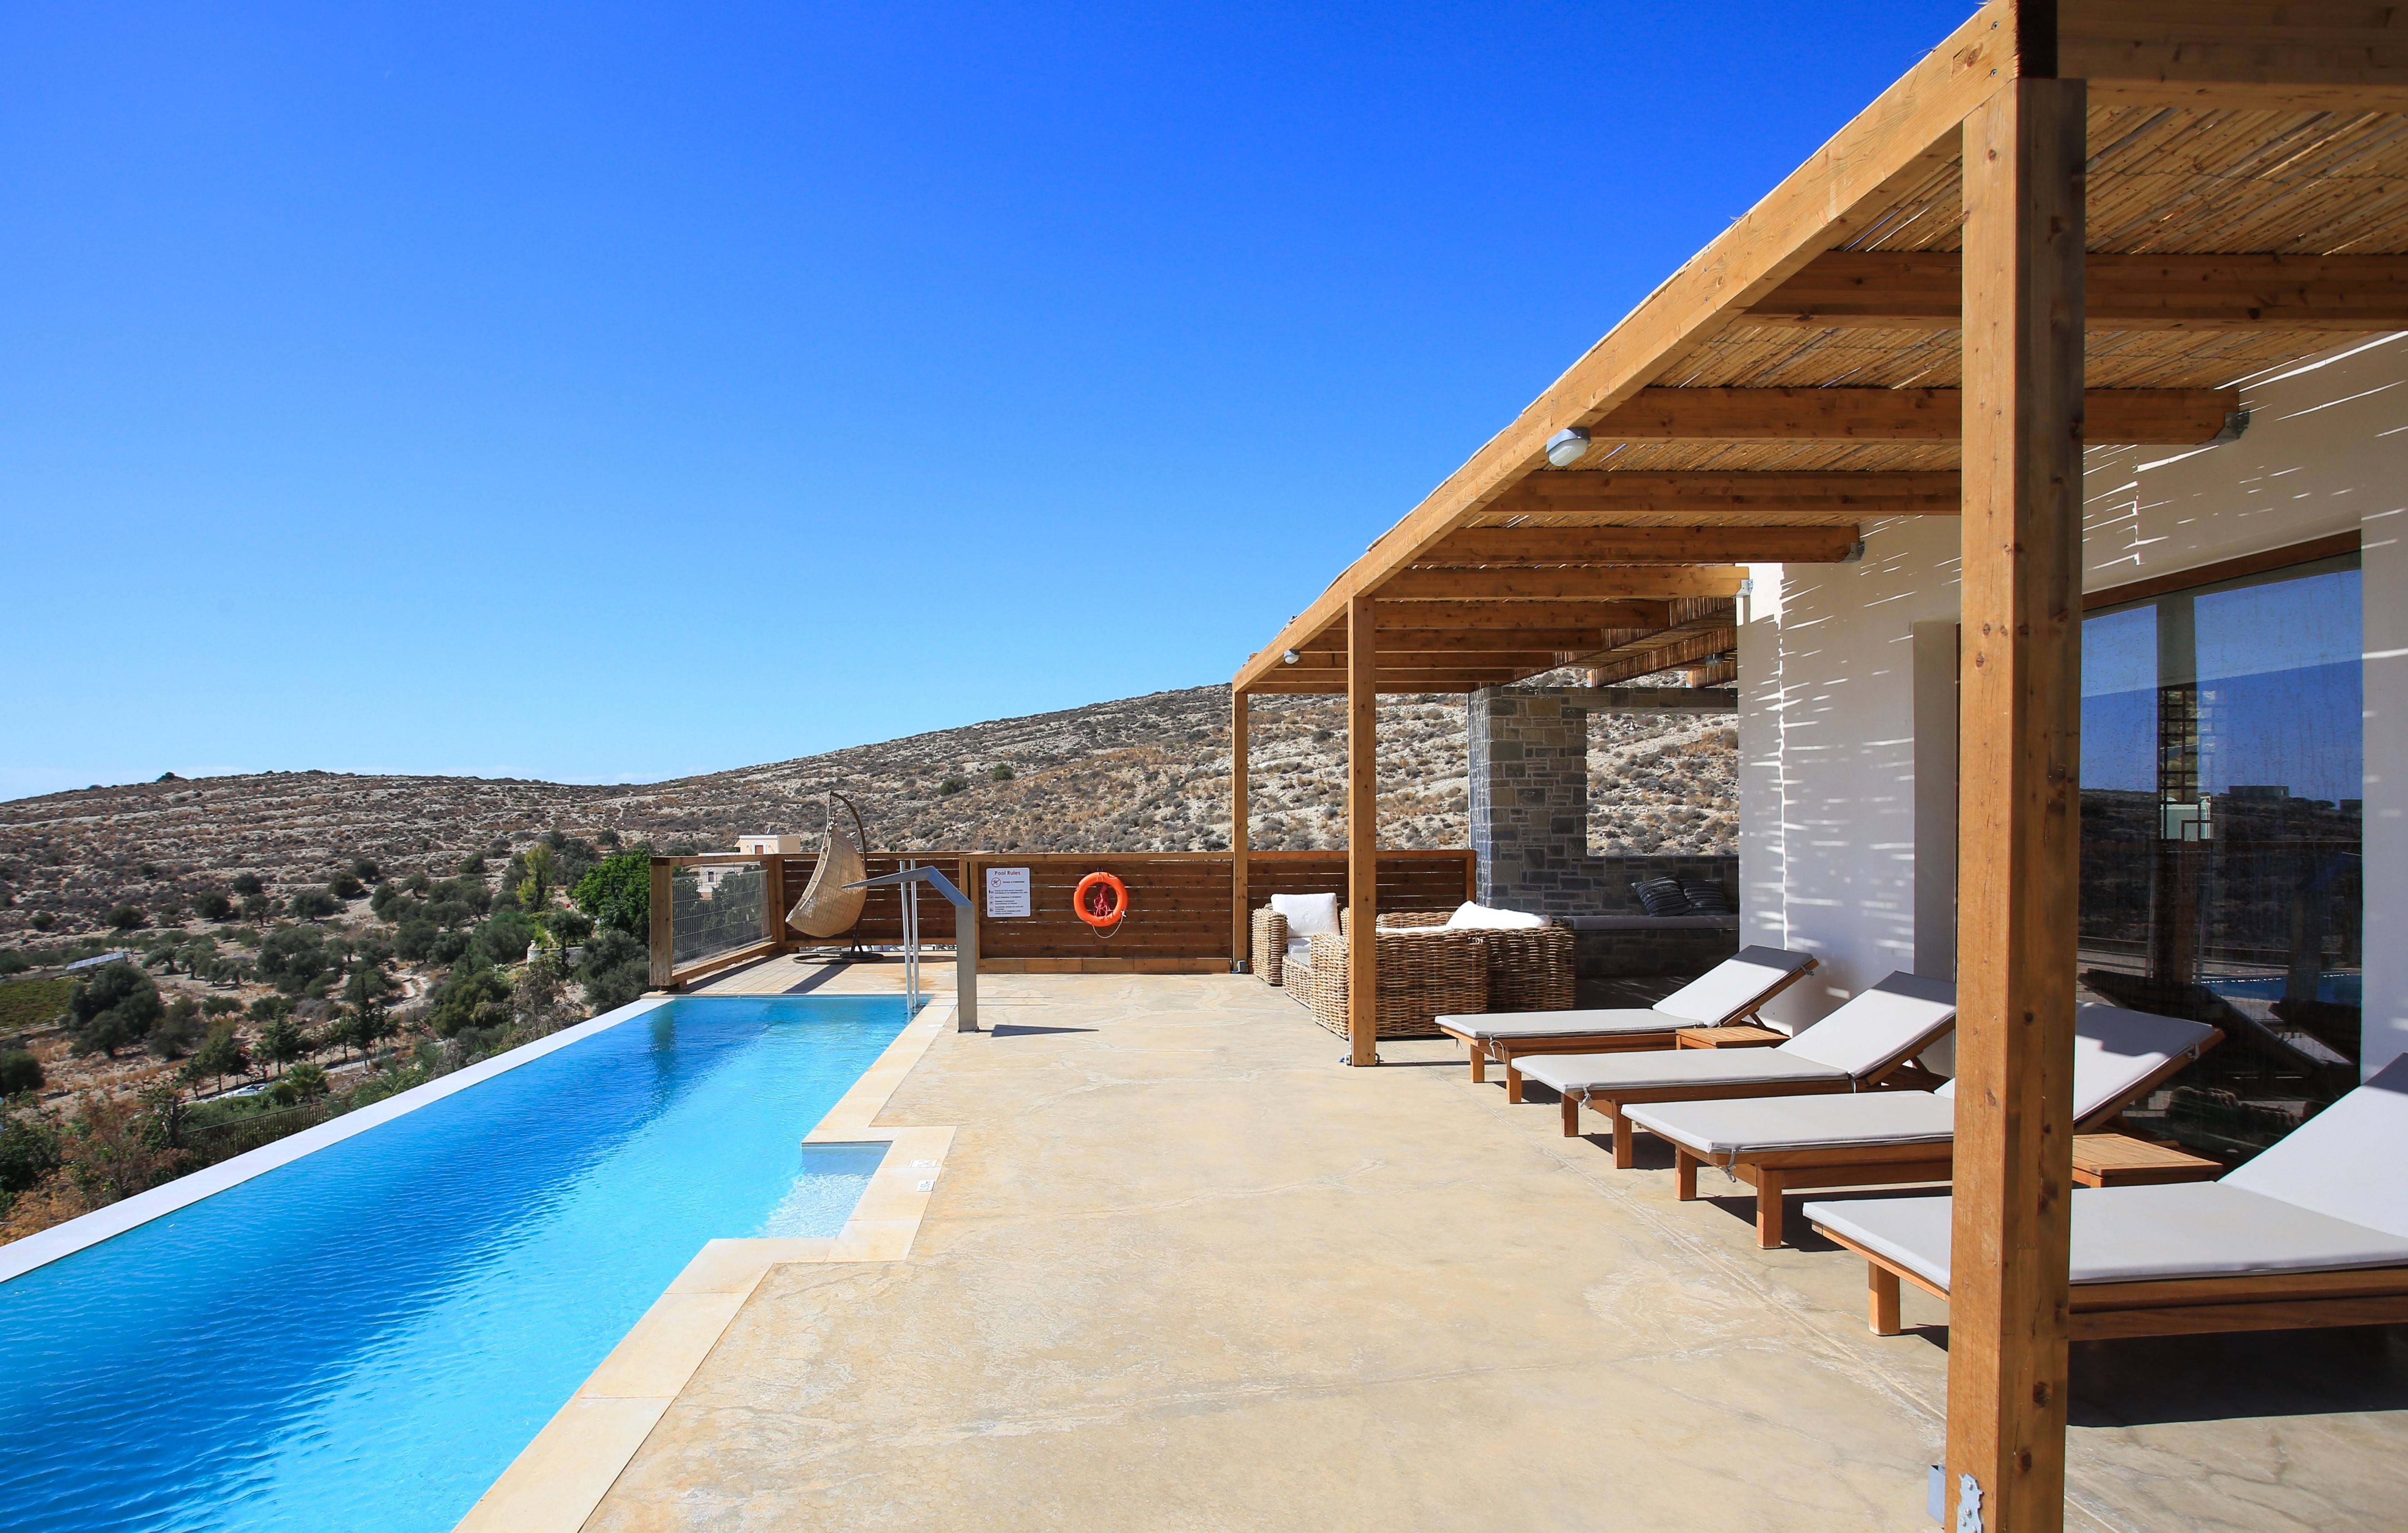 Terra Creta - Greece villa in Crete with pool